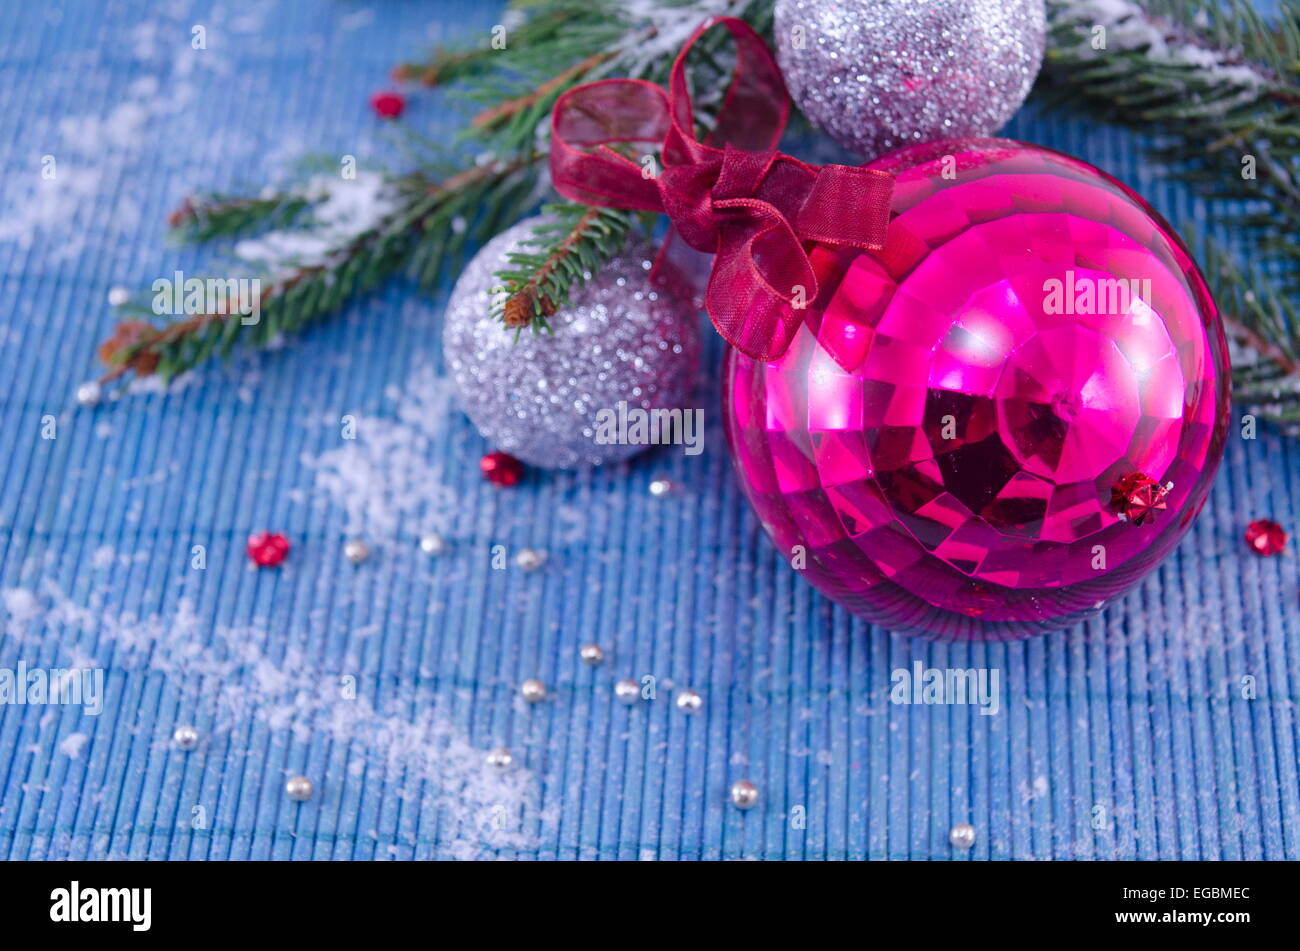 Rosa Ornament Weihnachtskugel mit einer Tanne auf weiße Tischdecke Stockfoto